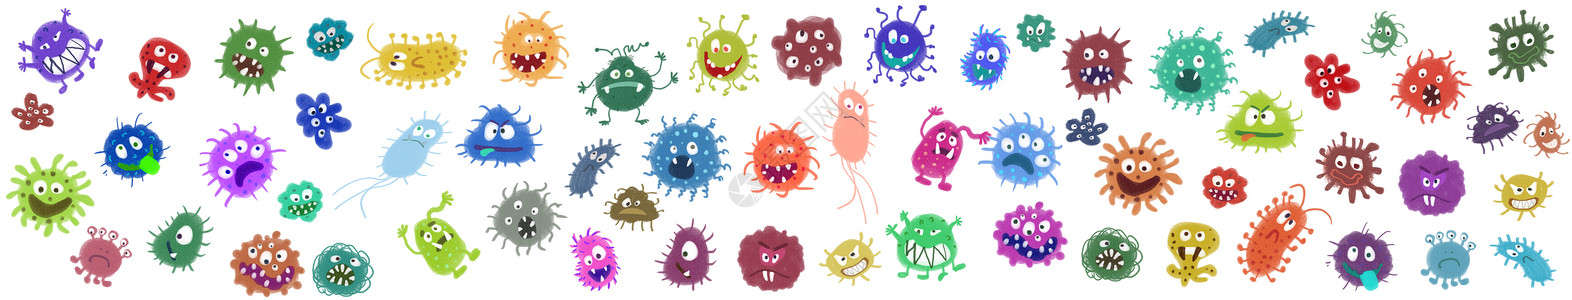 防护晒伤细菌病毒元素插画